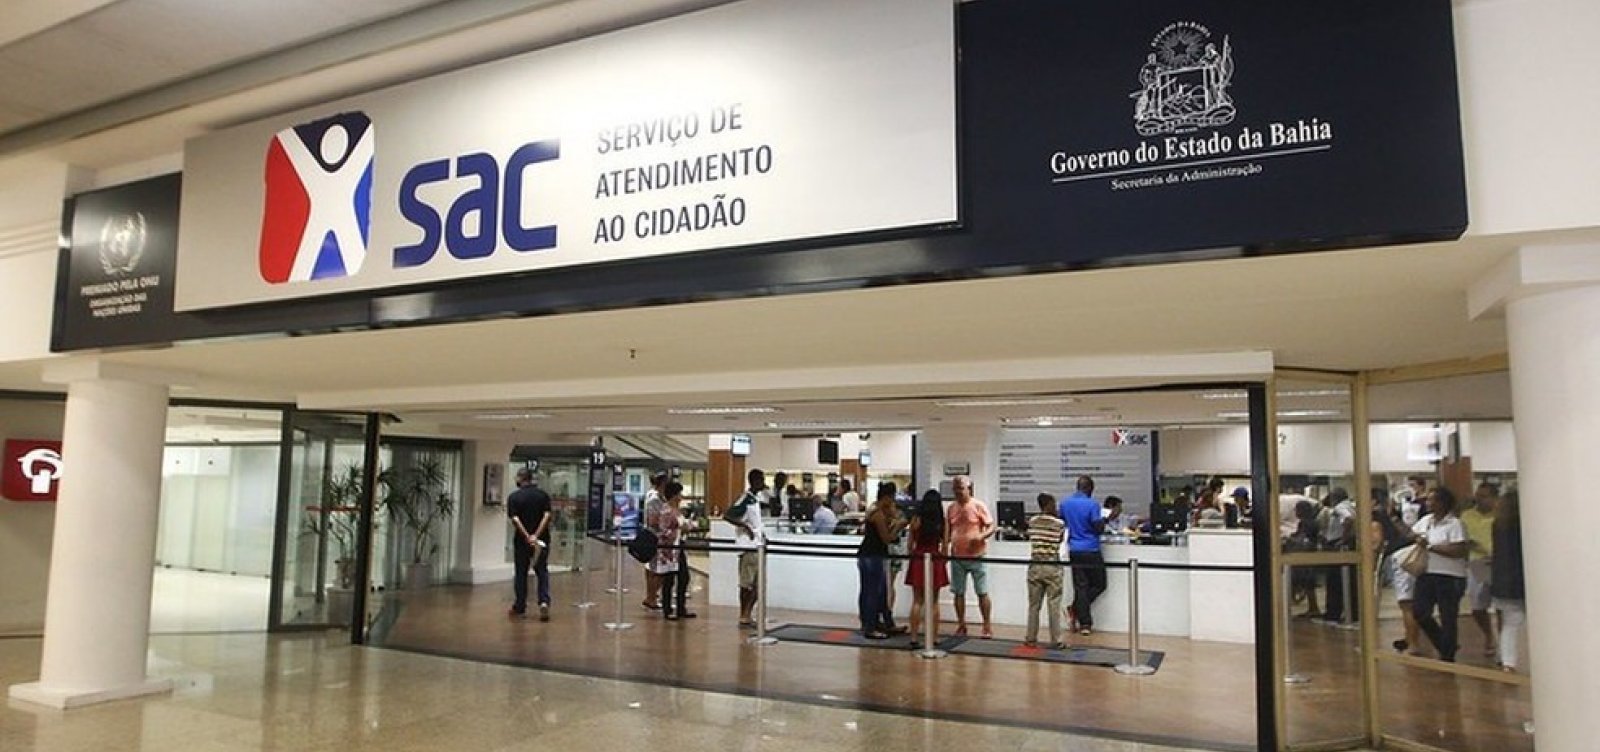 Bahia passa a exigir comprovante de vacina para acesso a serviços públicos nesta quarta